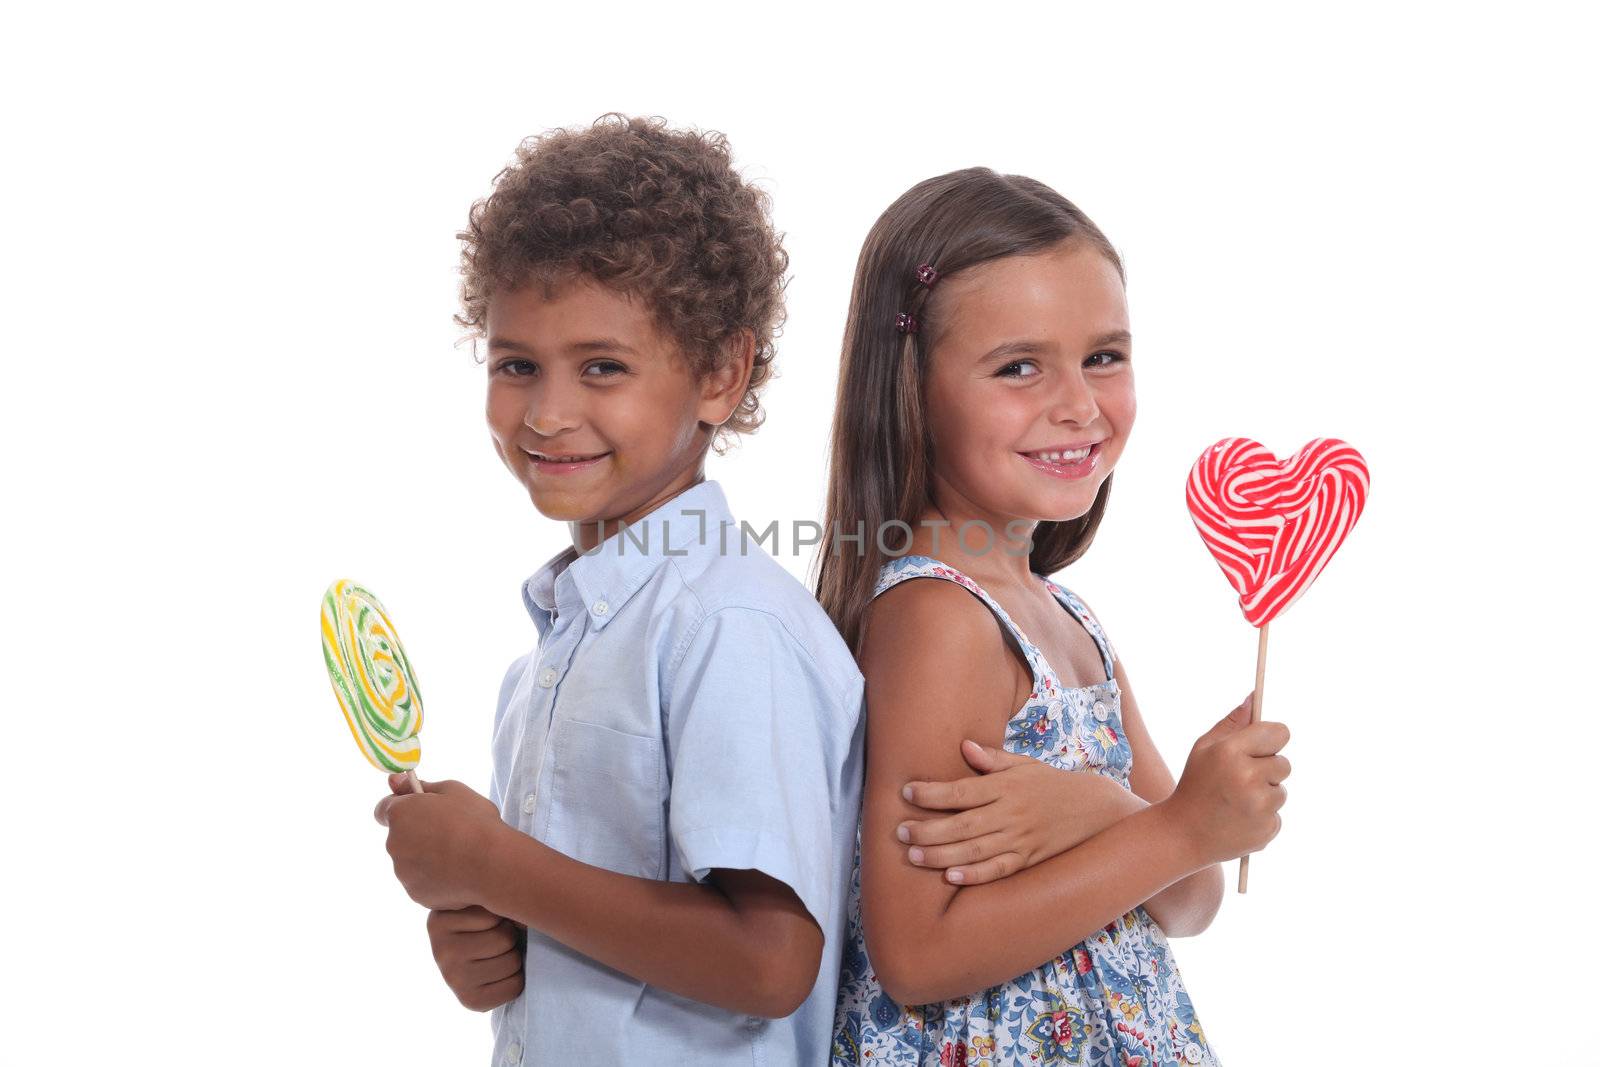 children eating lollipops by phovoir